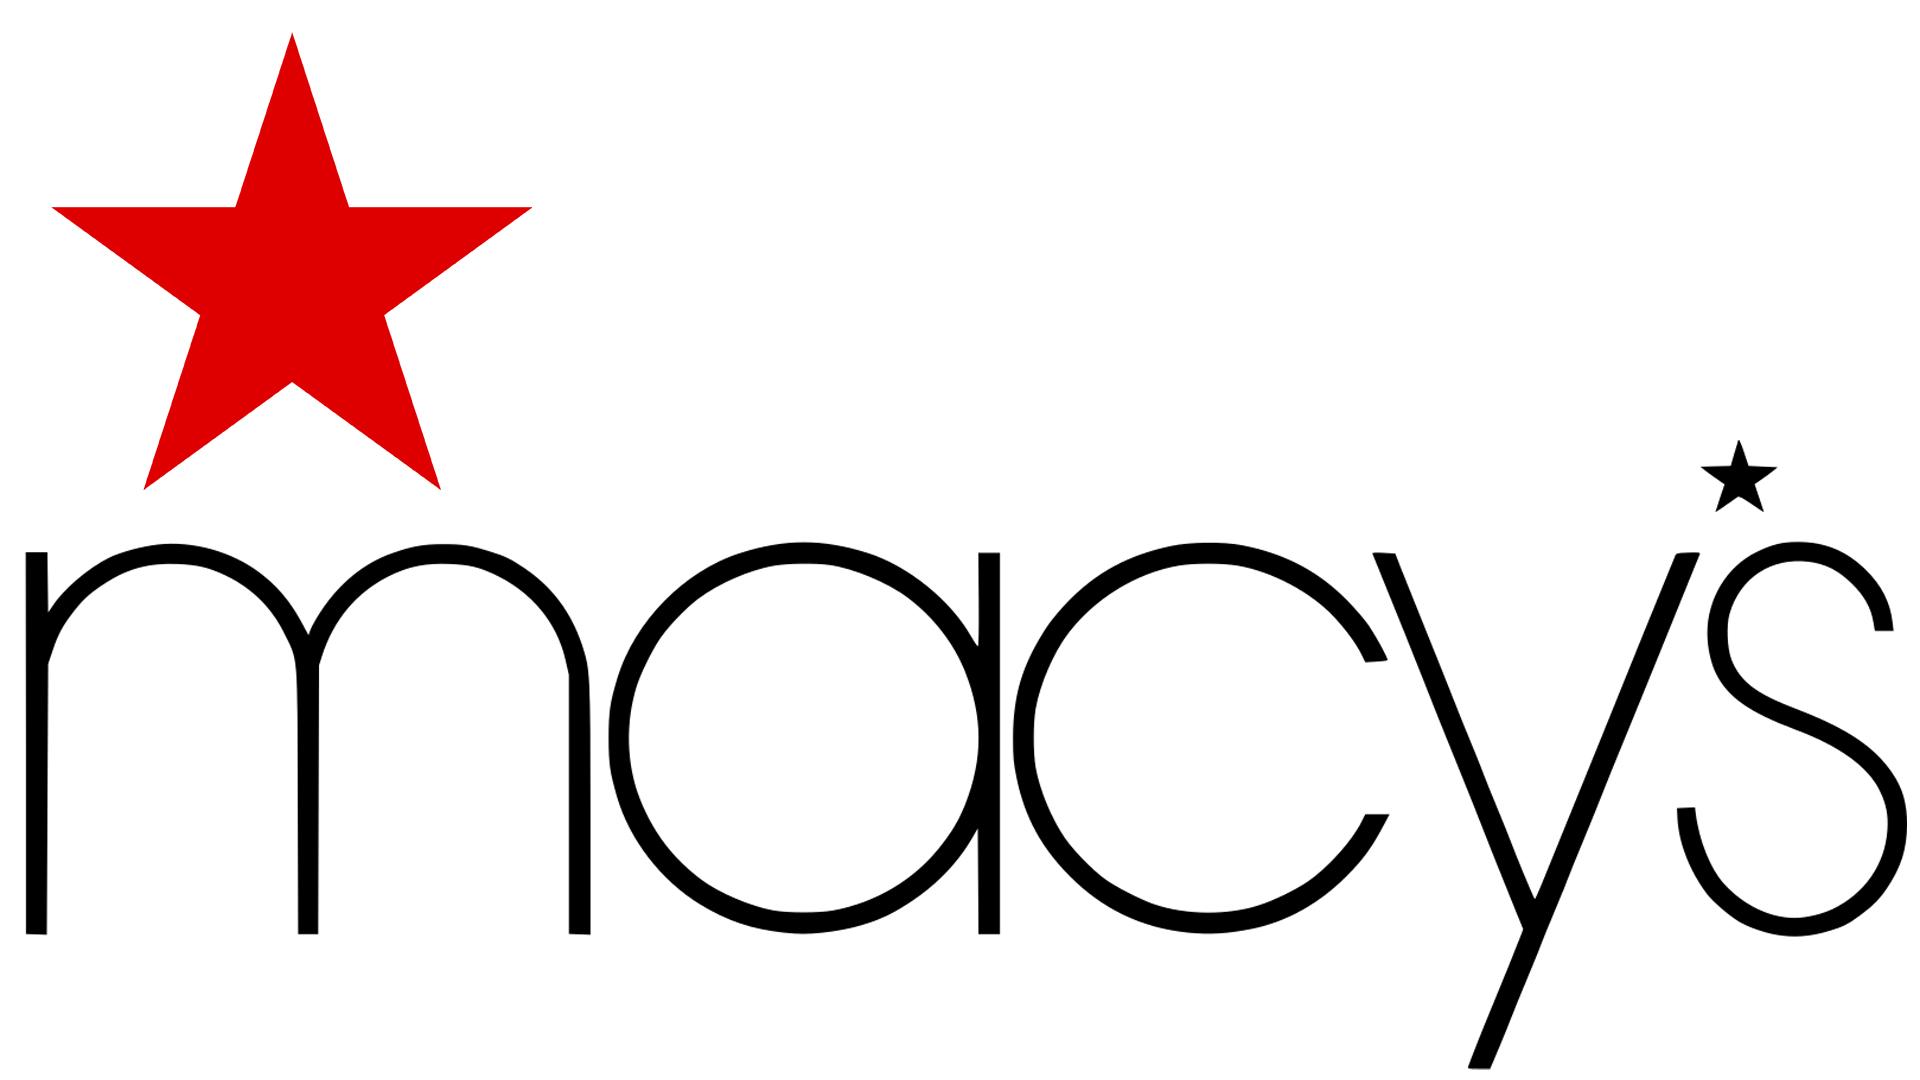 Macy's Logo - Macys Logo, Macys Symbol, Meaning, History and Evolution